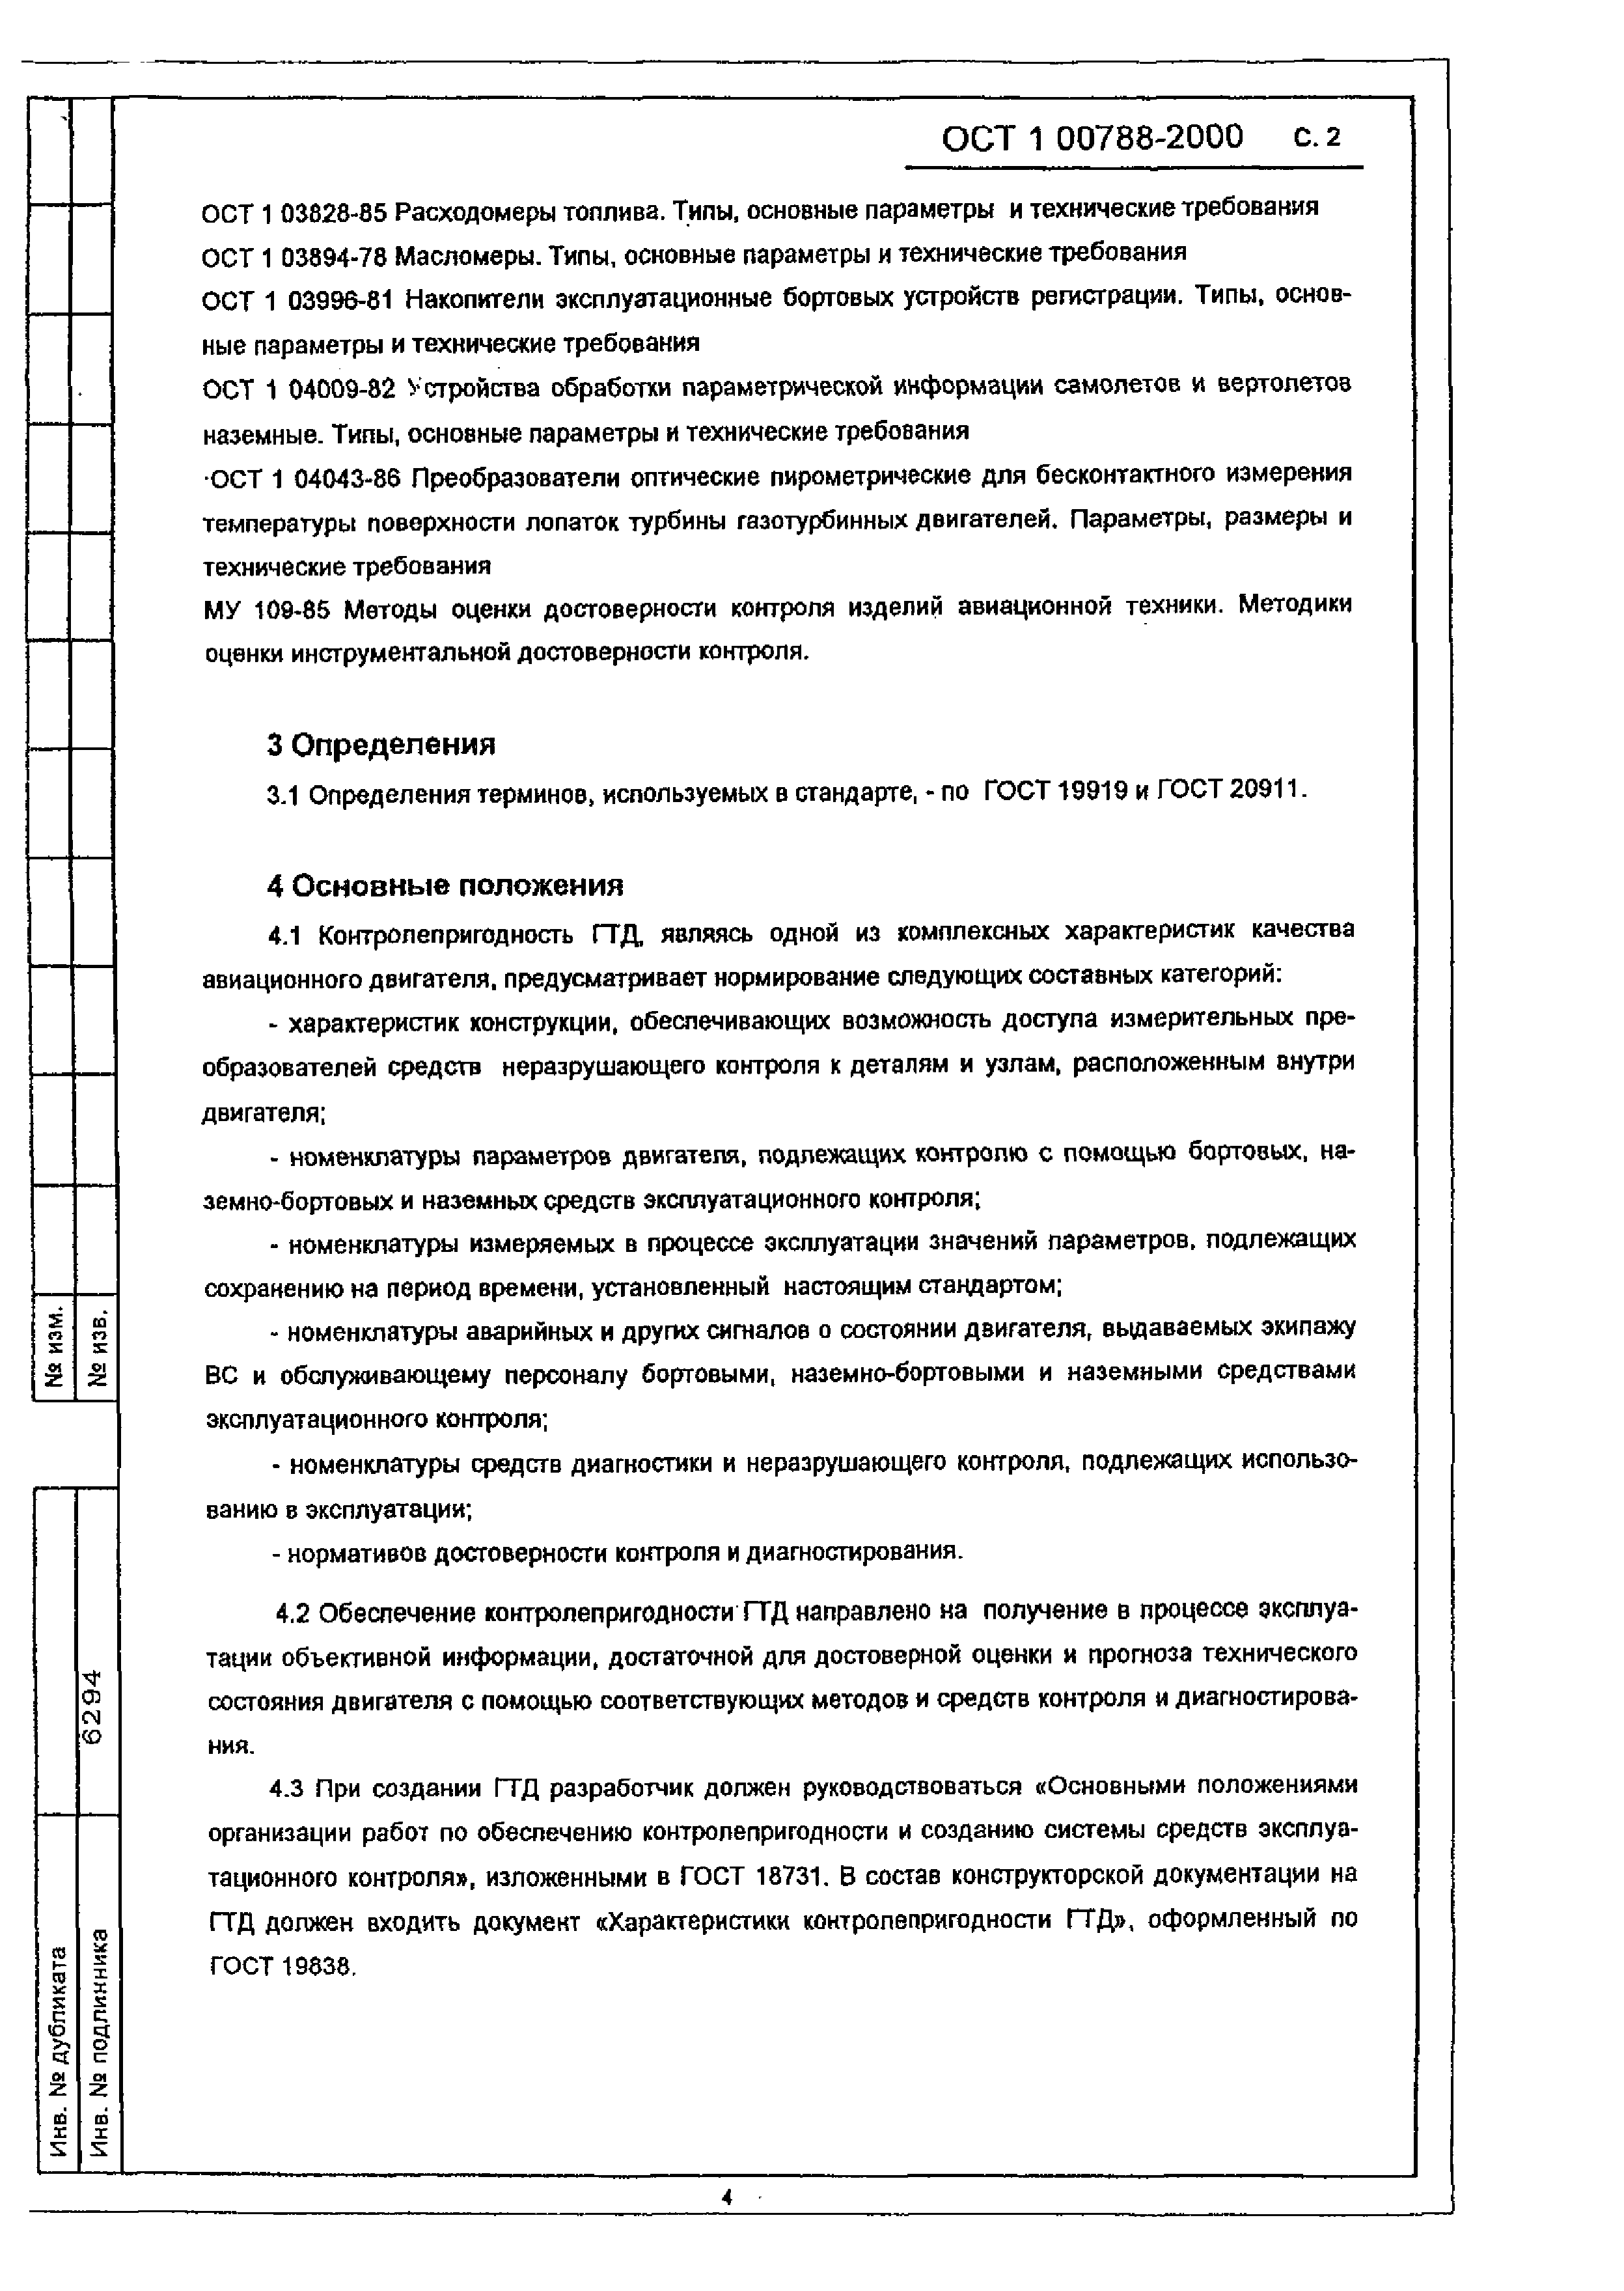 ОСТ 1 00788-2000